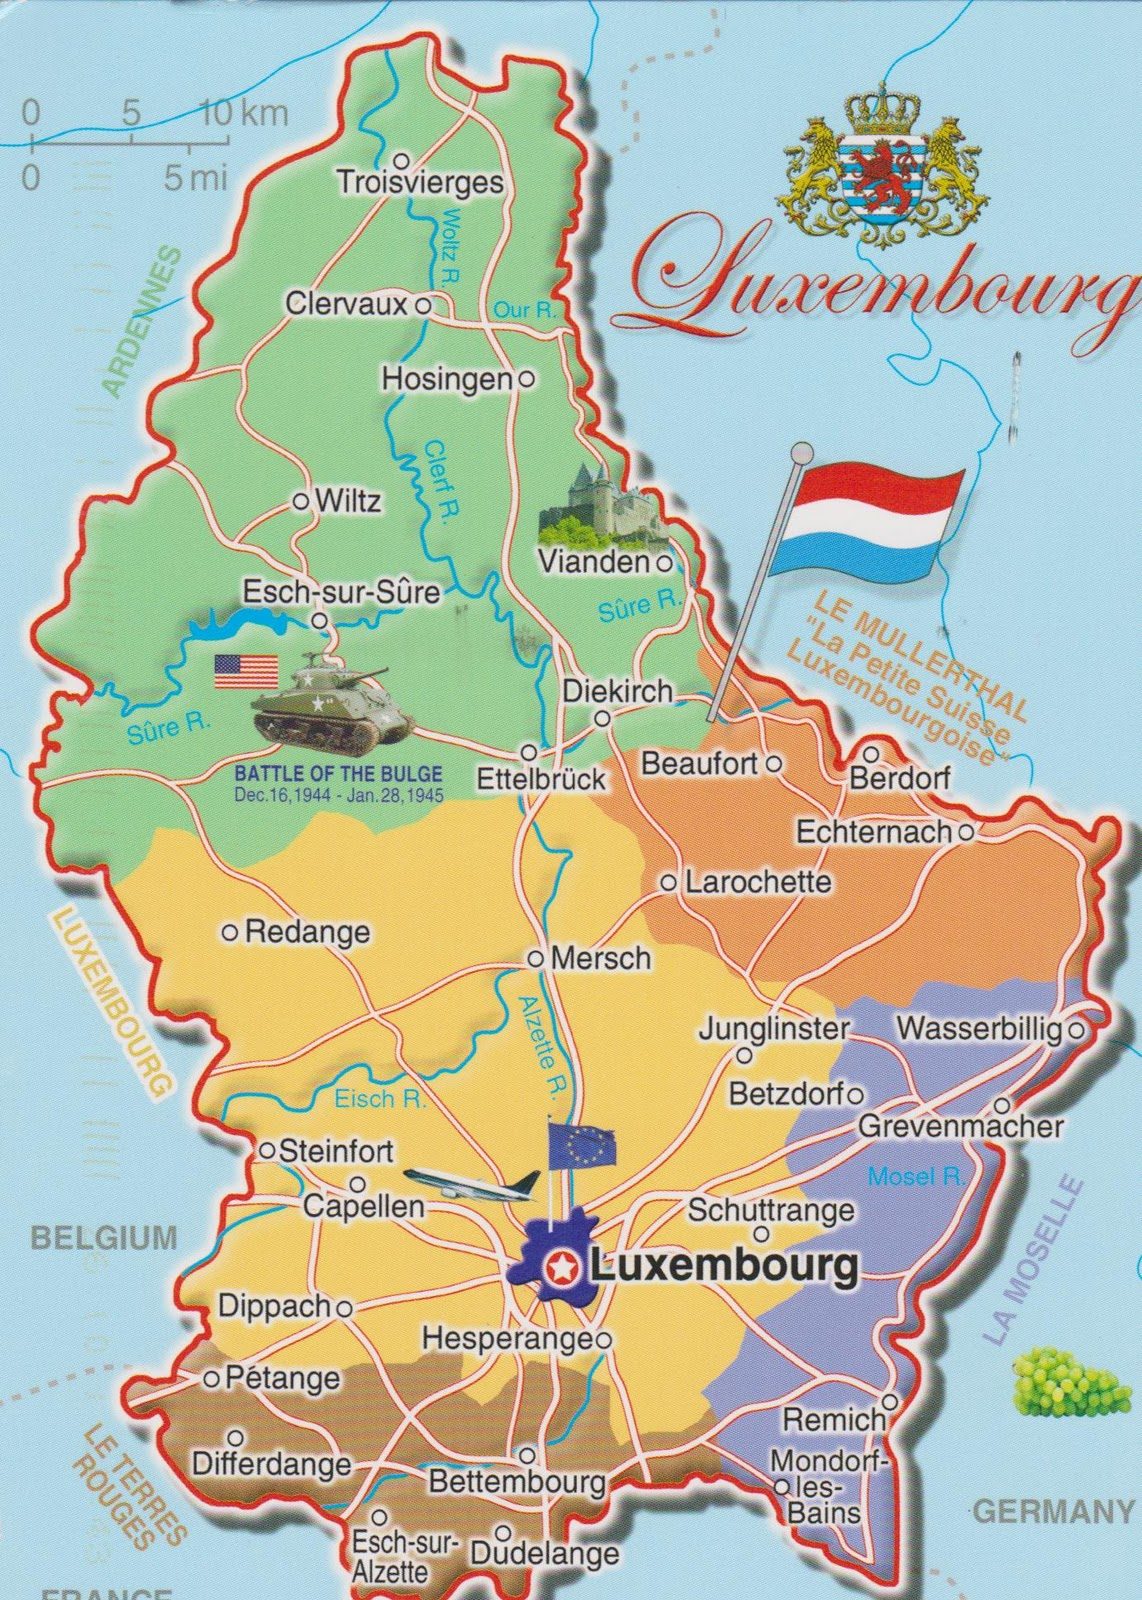 [Update] Bản đồ hành chính đất nước Luxembourg (Luxembourg Map) phóng to năm 2022 18